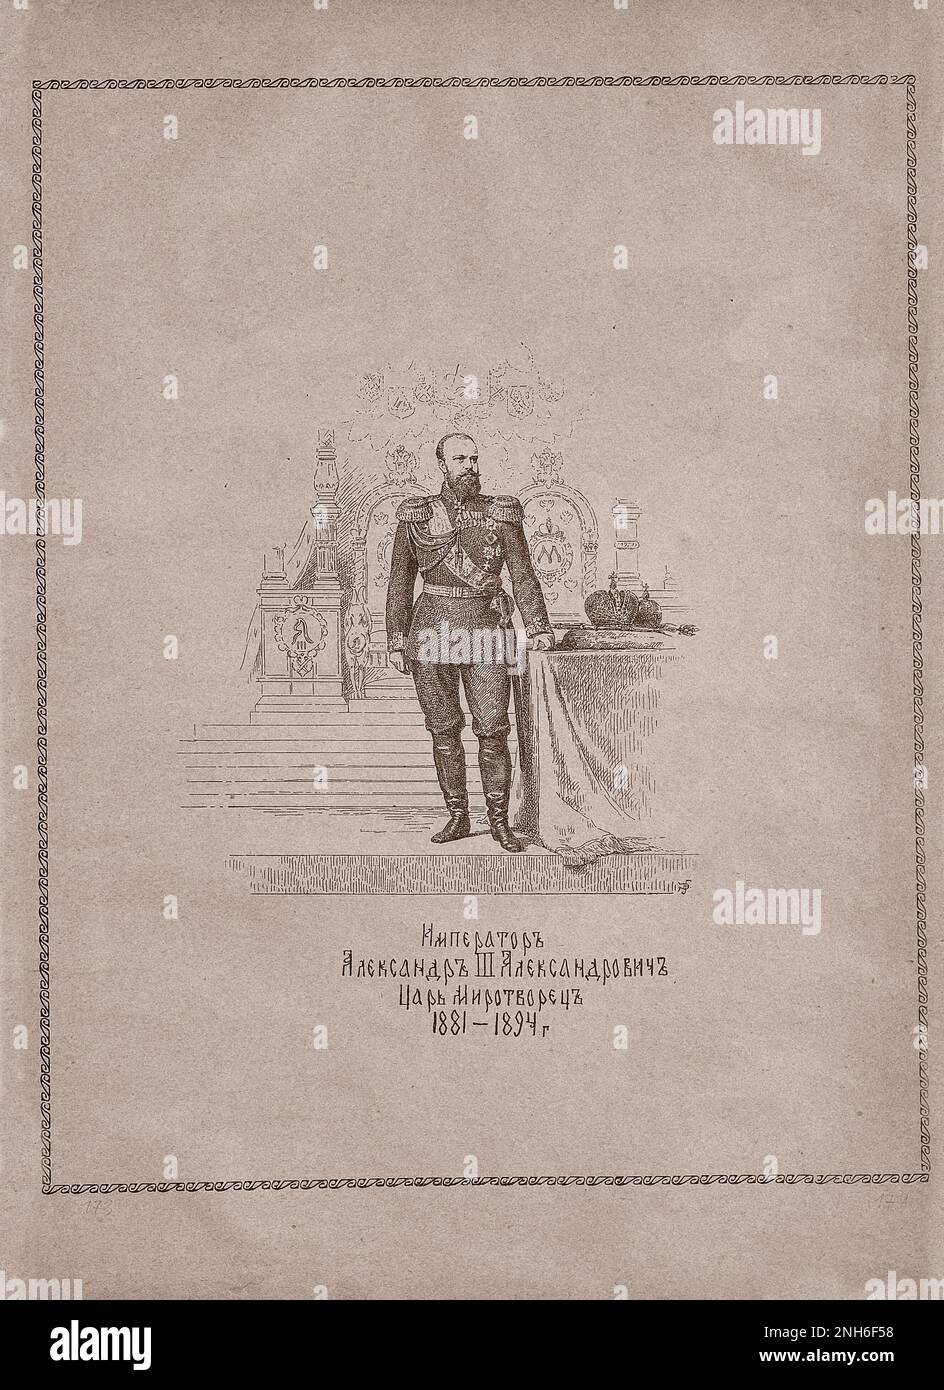 Gravure d'Alexandre III de Russie. 1913 Alexandre III (1845–1894) fut empereur de Russie, roi de Pologne et grand-duc de Finlande du 13 mars 1881 jusqu'à sa mort en 1894. Il était hautement réactionnaire et renversa certaines des réformes libérales de son père, Alexandre II Cette politique est connue en Russie sous le nom de "contre-réformes" (russe: контрреформы). Sous l'influence de Konstantin Pobedonostsev (1827-1907), il s'opposa à toute réforme qui limitait son régime autocratique. Pendant son règne, la Russie ne livra pas de guerres majeures; il fut donc appelé 'le faiseur de paix'. Il a contribué à forger l'Alliance russo-française. Banque D'Images